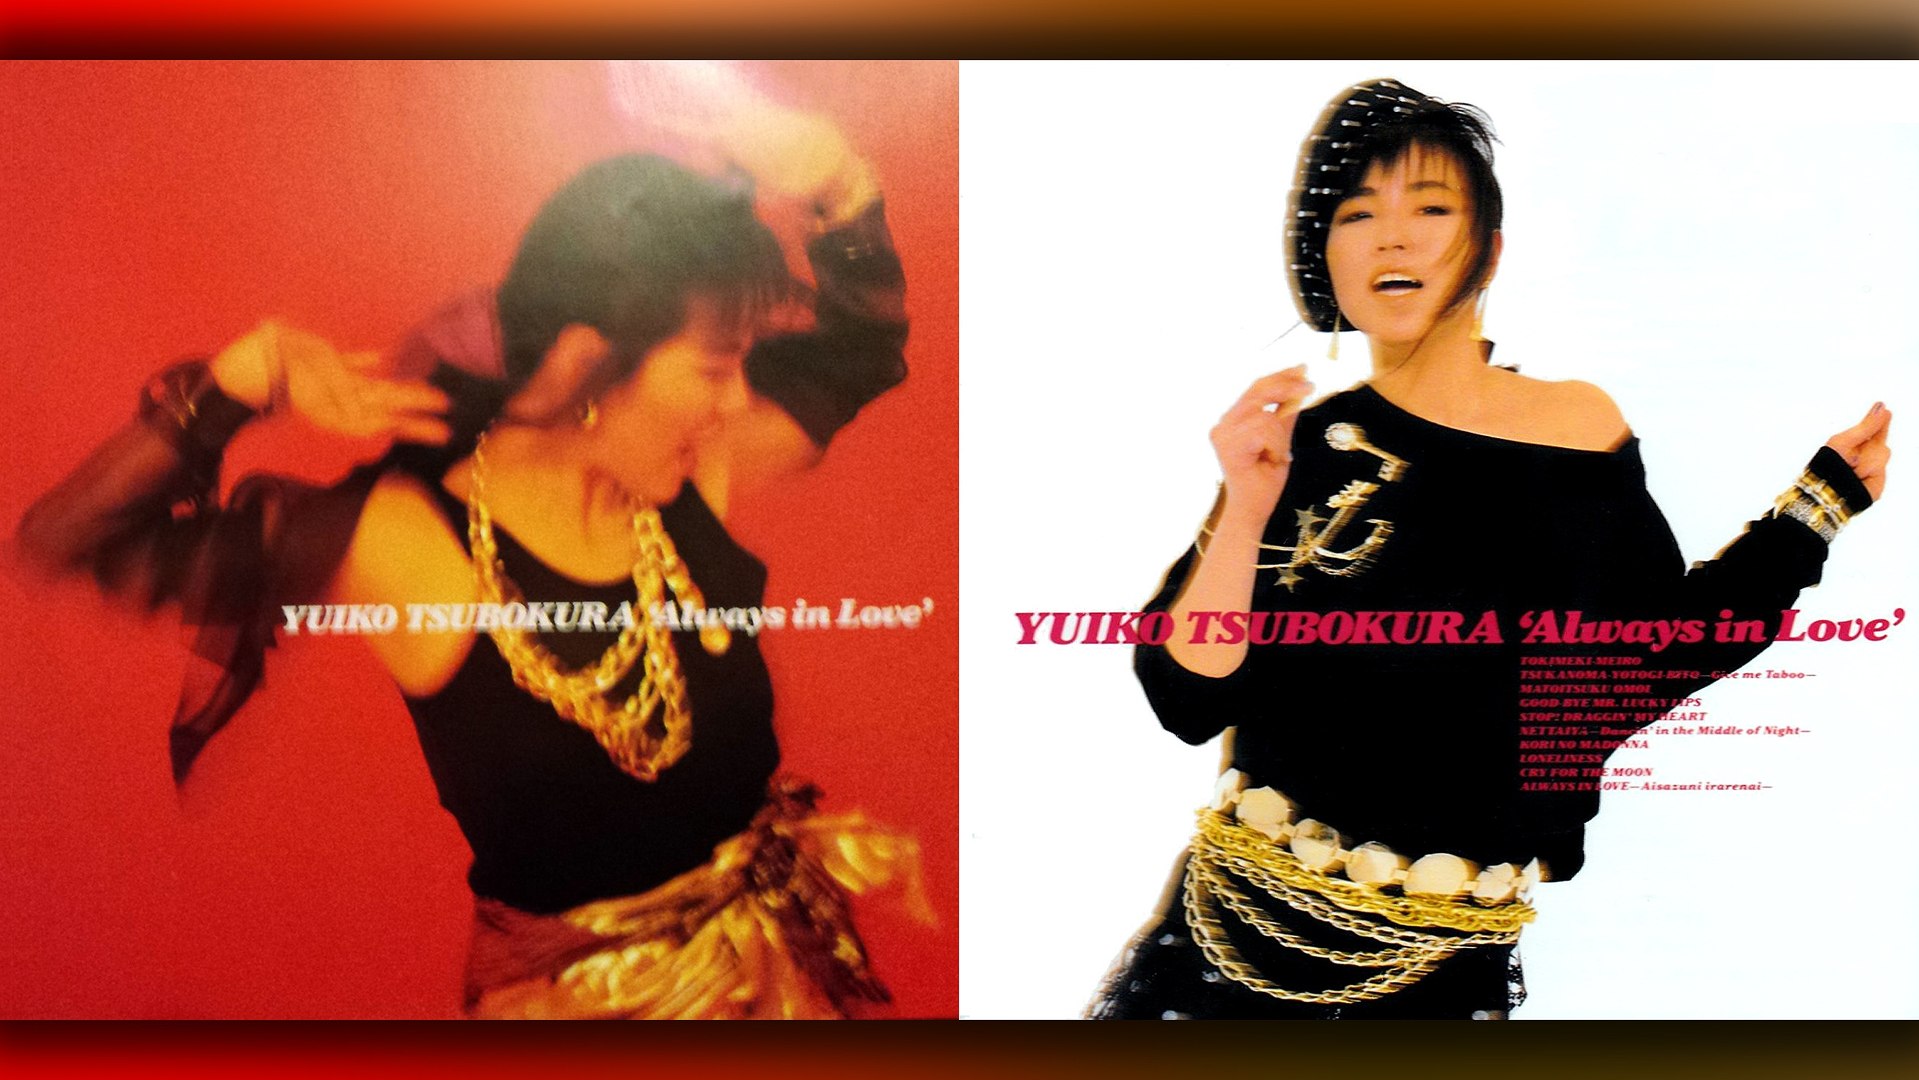 坪倉唯子 (Yuiko Tsubokura) - 01 - 1986 - Always in Love [full album]